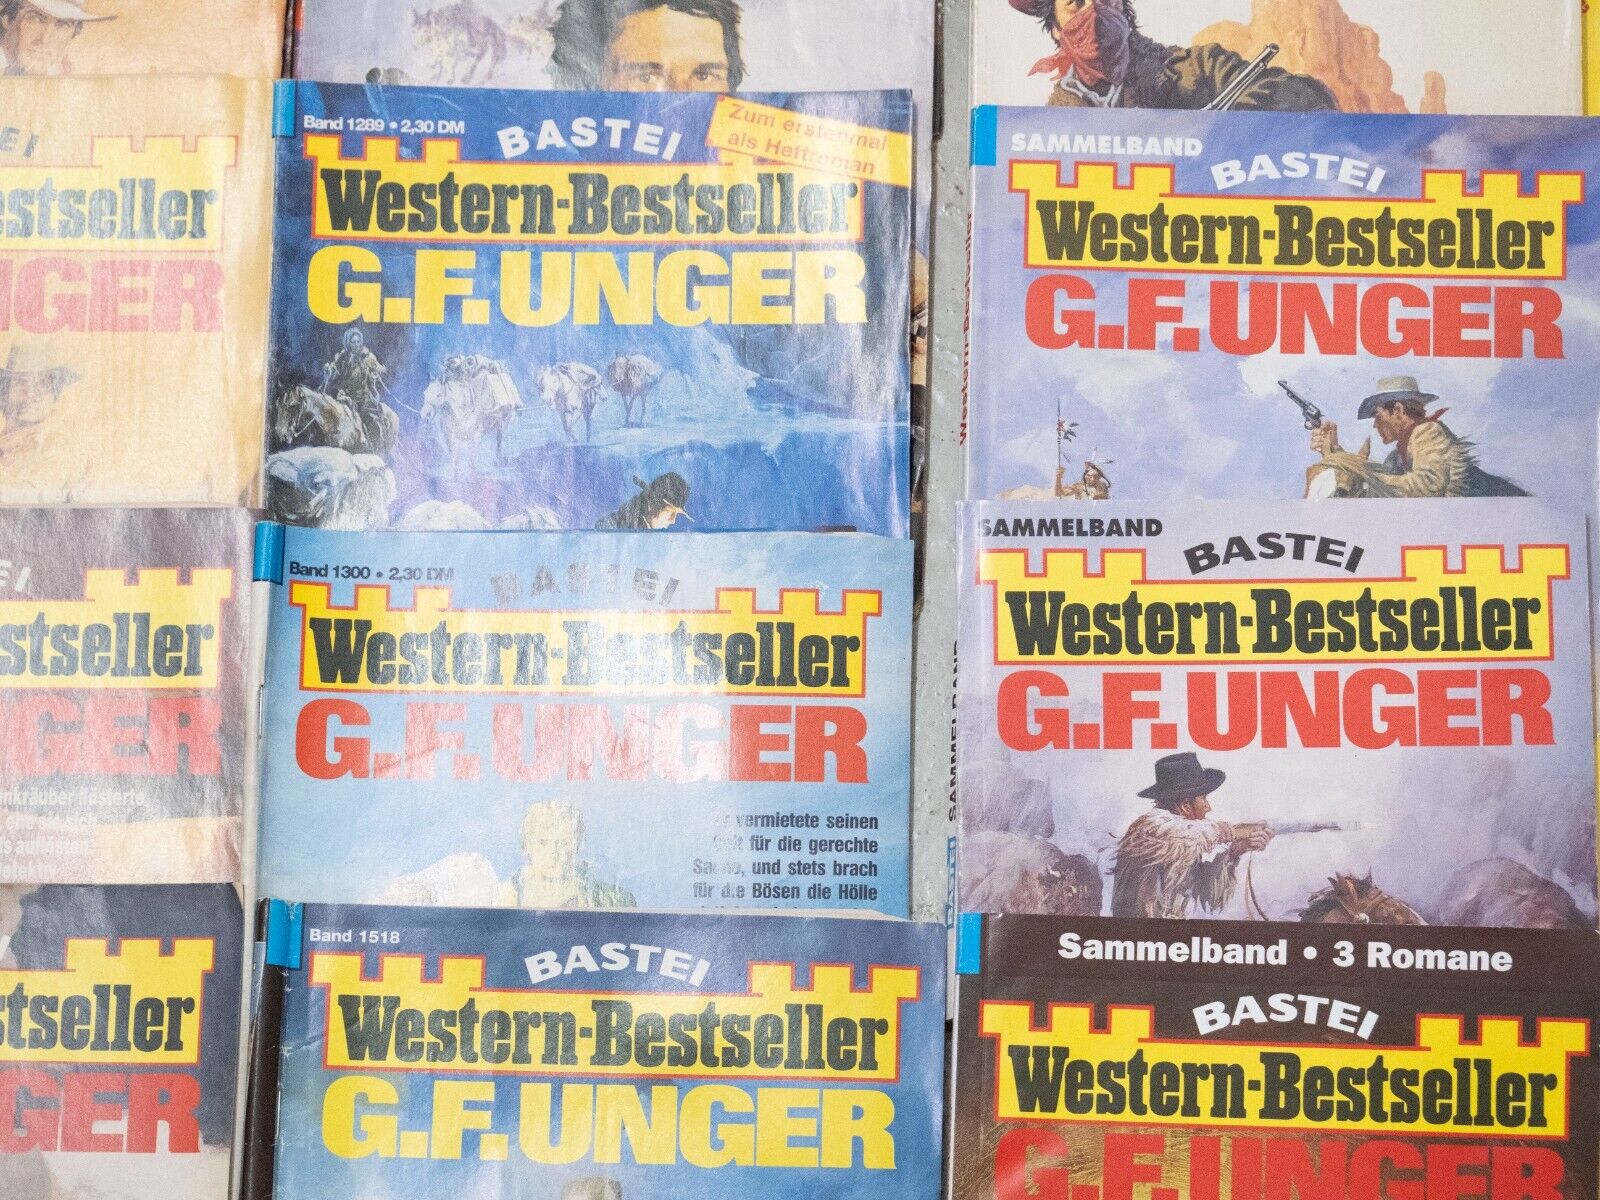 76x Bastei Western-Bestseller G. F. Unger Romanhefte + Sammelbände